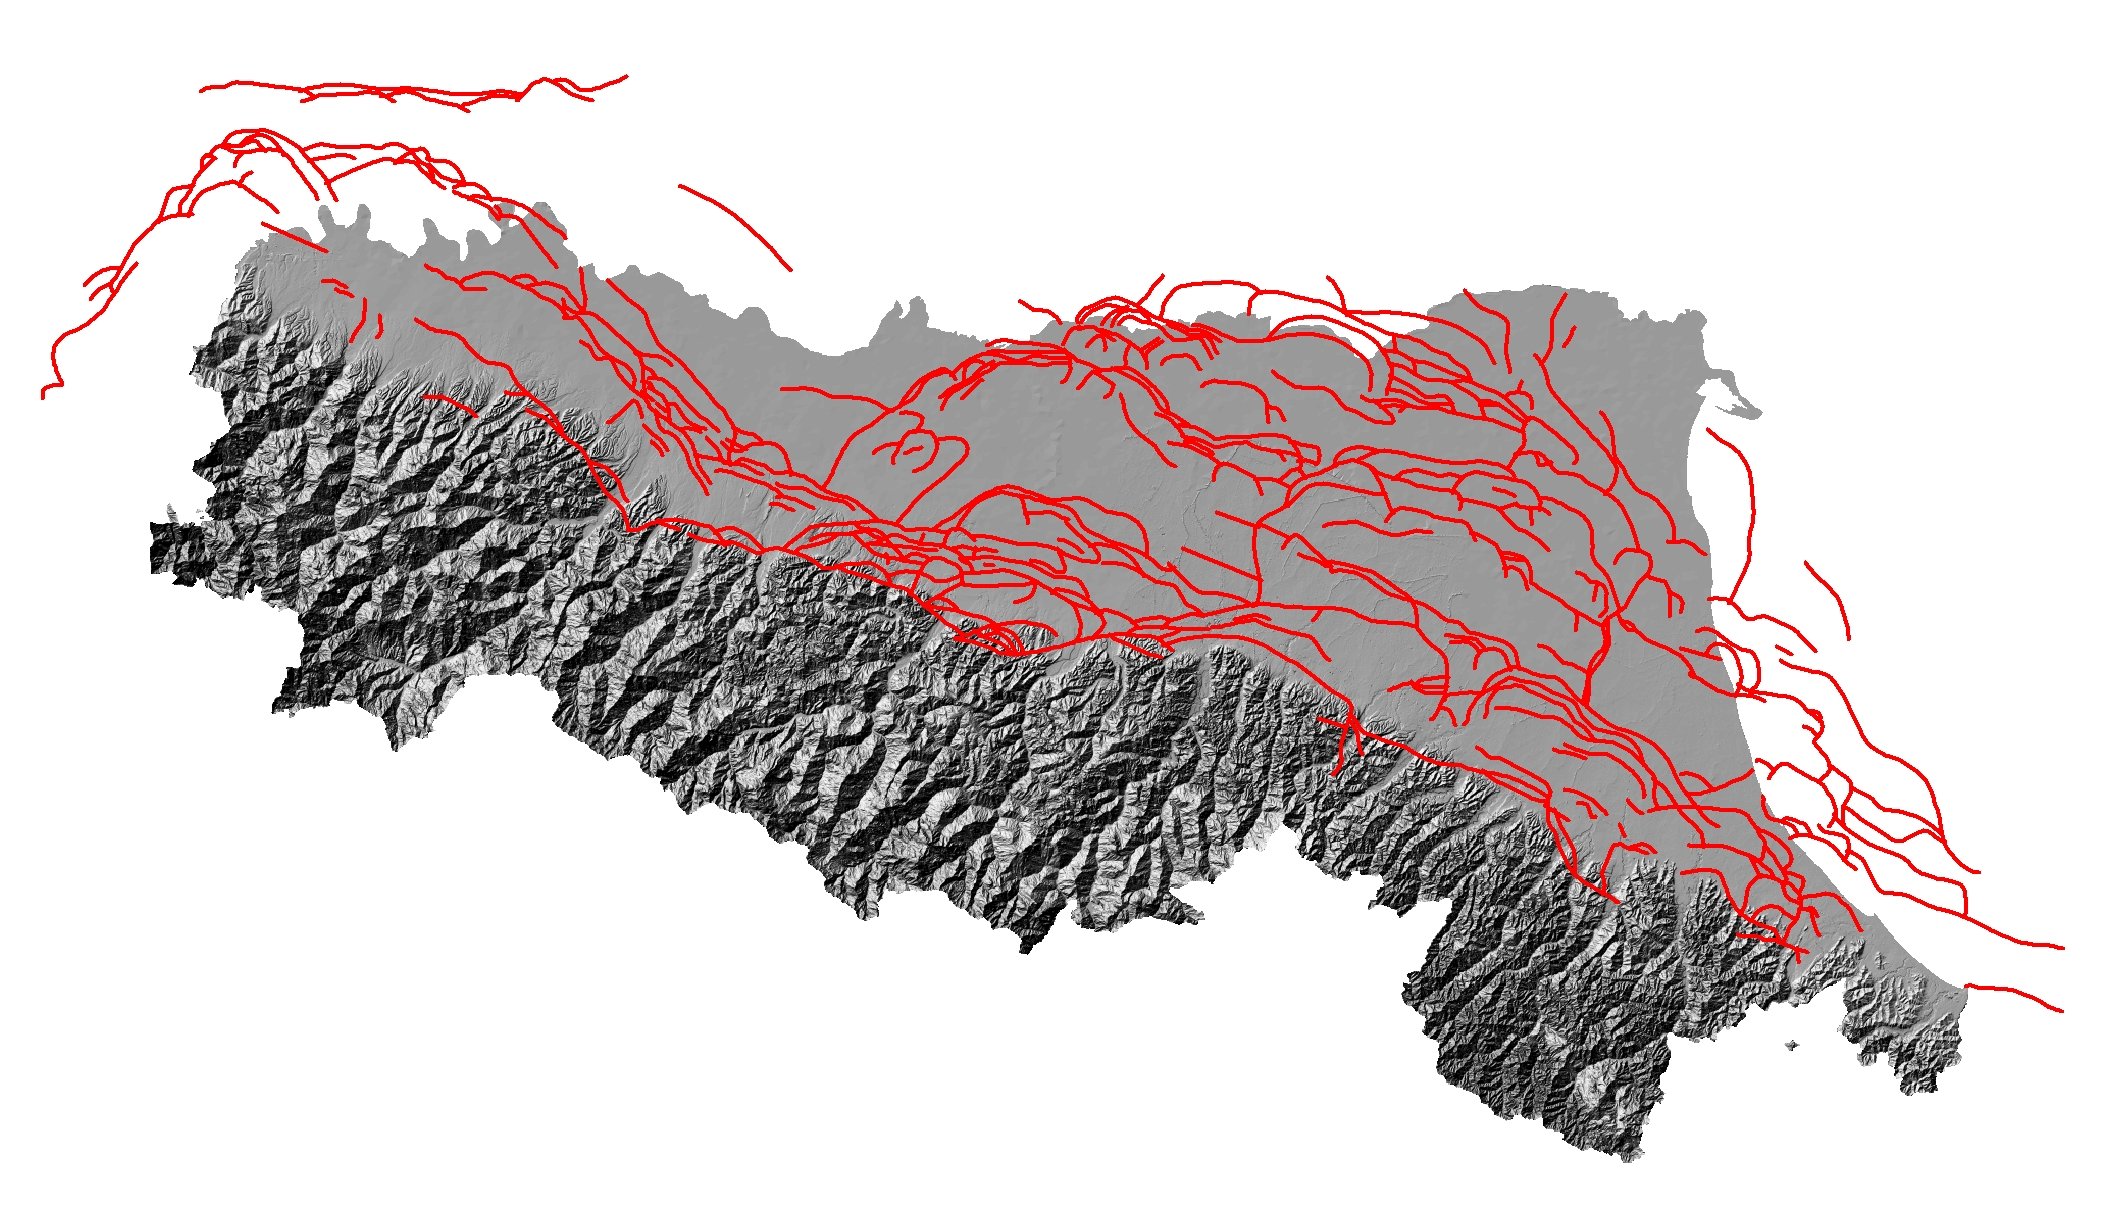 Le principali strutture tettoniche (in rosso) che costituiscono il proseguimento della catena appenninica al di sotto dei sedimenti della Pianura Padana